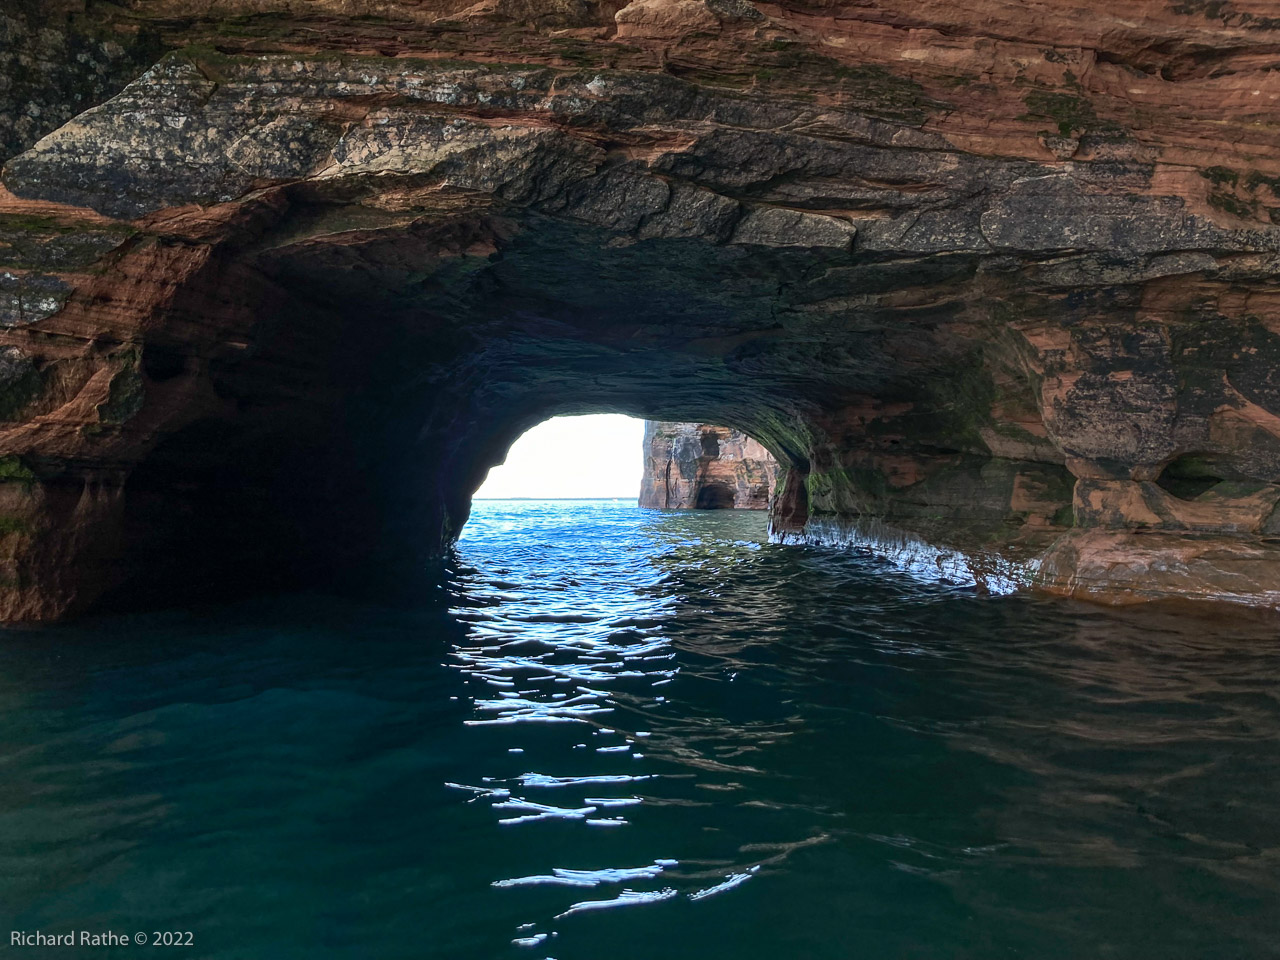 Sea Caves